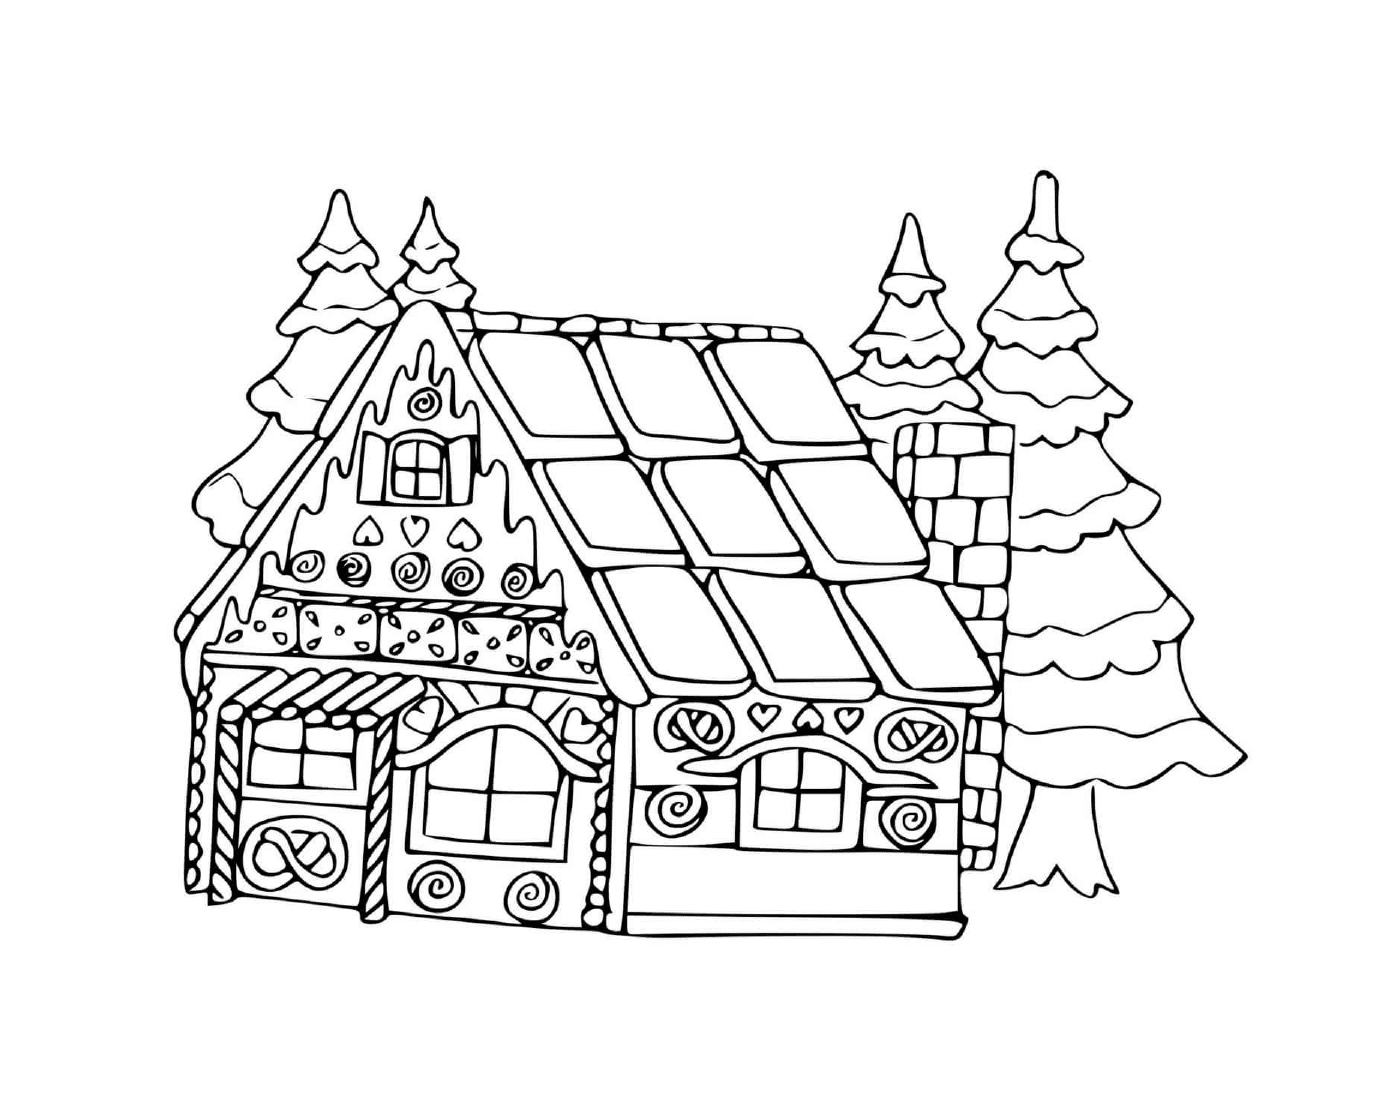  Дом в имбирном печенье с пивными деревьями 